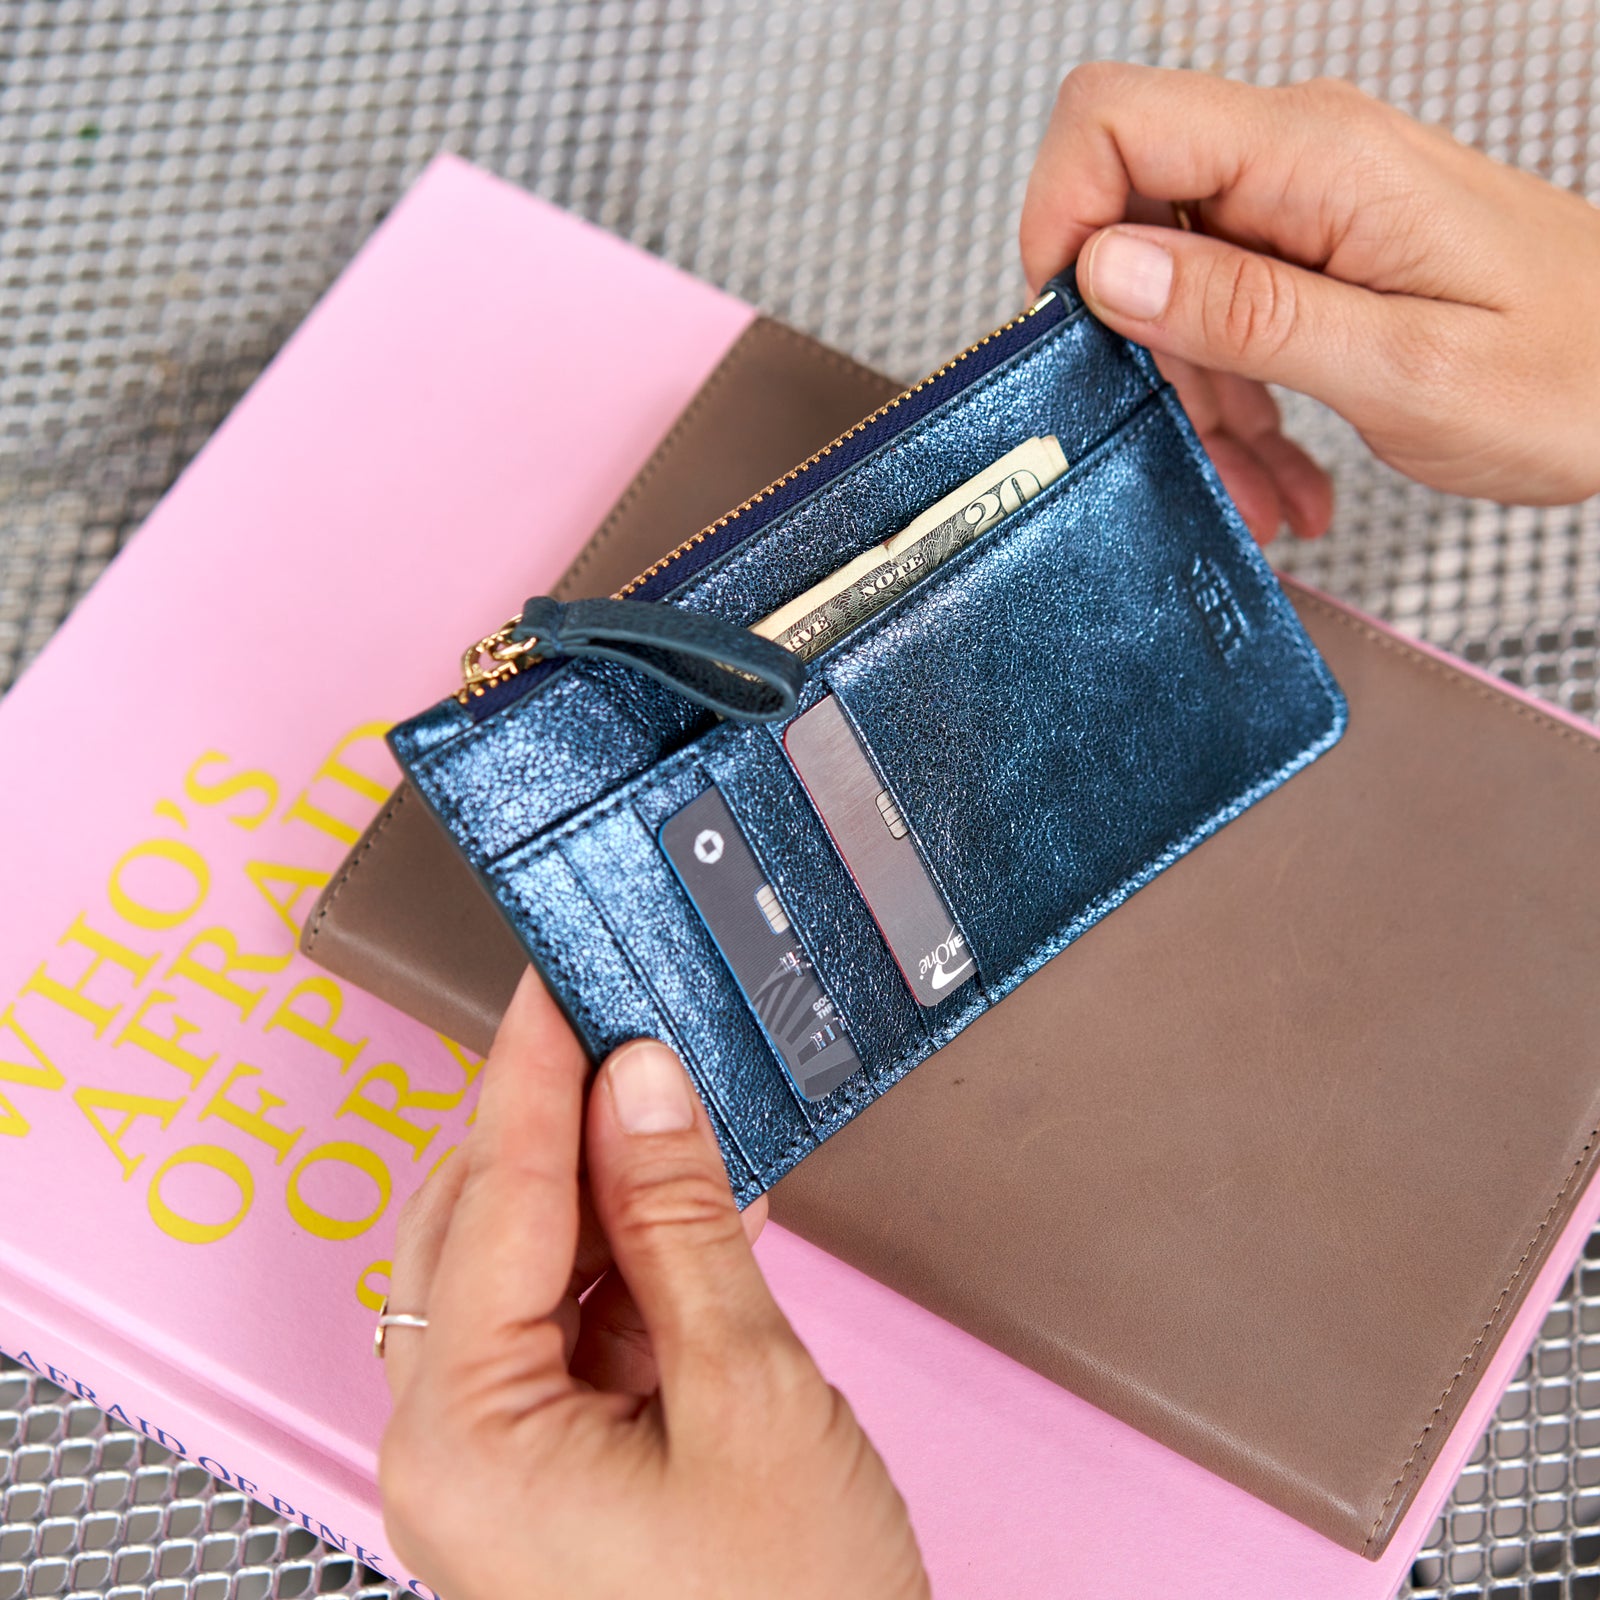 Card Case Women's Wallets